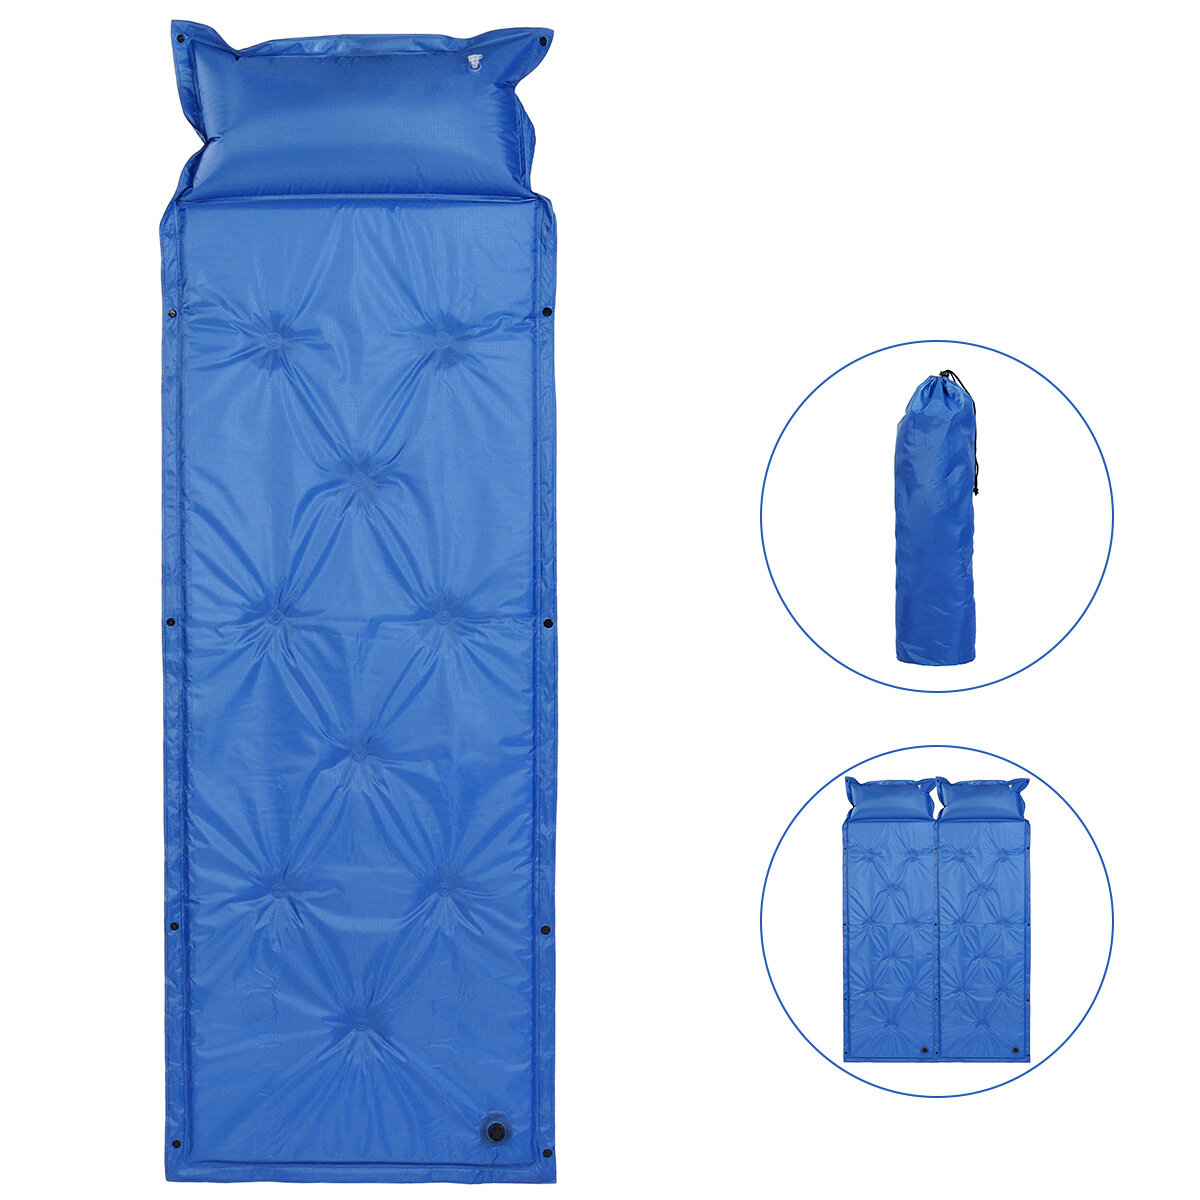 Kendinden şişmeli yatak uyku matı hava yatağı kamp yürüyüş katılabilir tek kişilik uyku pedi için kamp çadırı